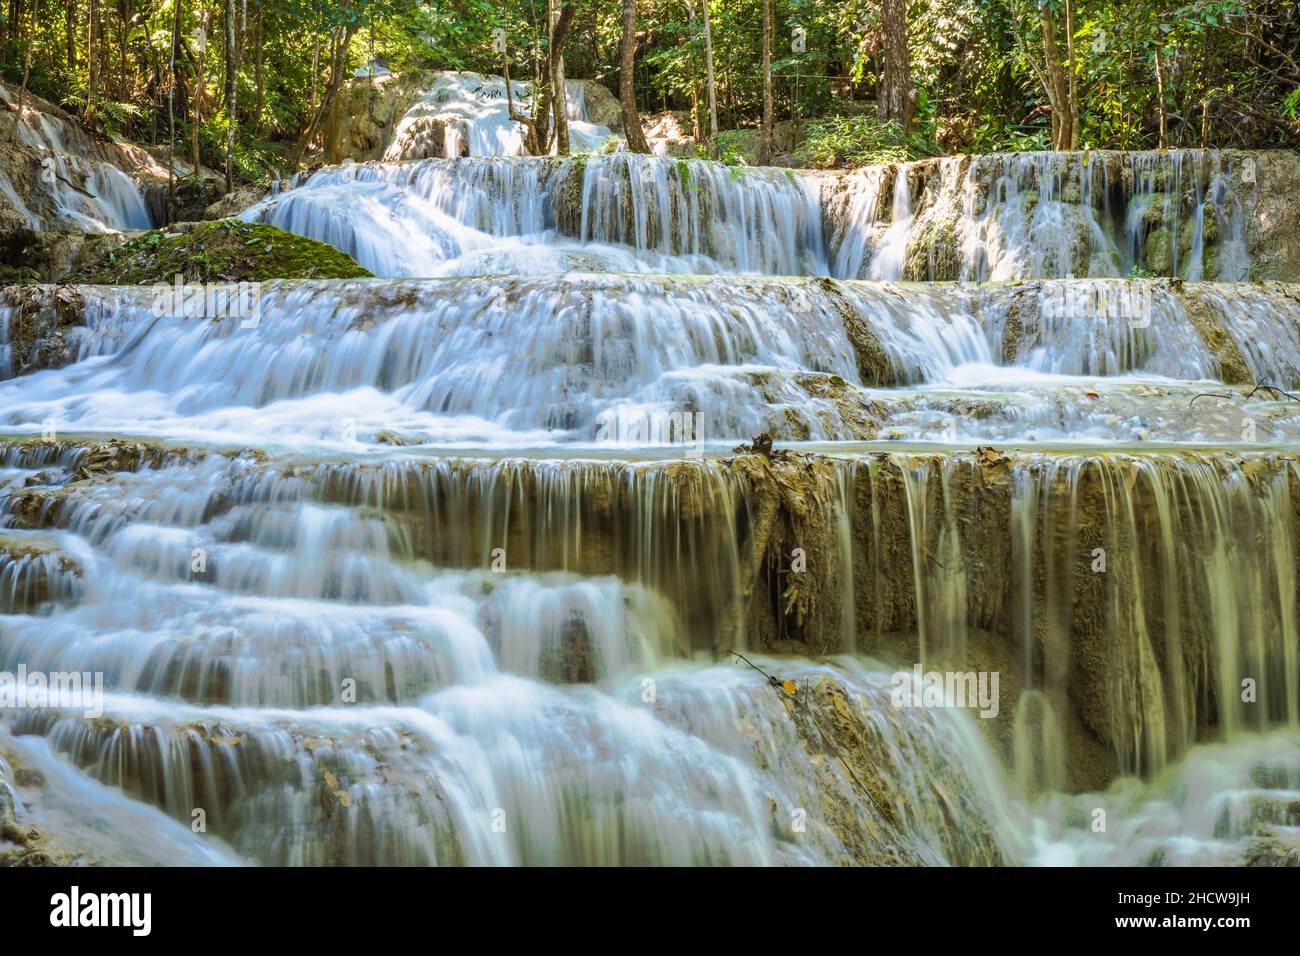 Parco Nazionale di Erawan in Thailandia. La cascata di Erawan è una famosa destinazione turistica e famosa per le sue acque color smeraldo. Foresta profonda Foto Stock